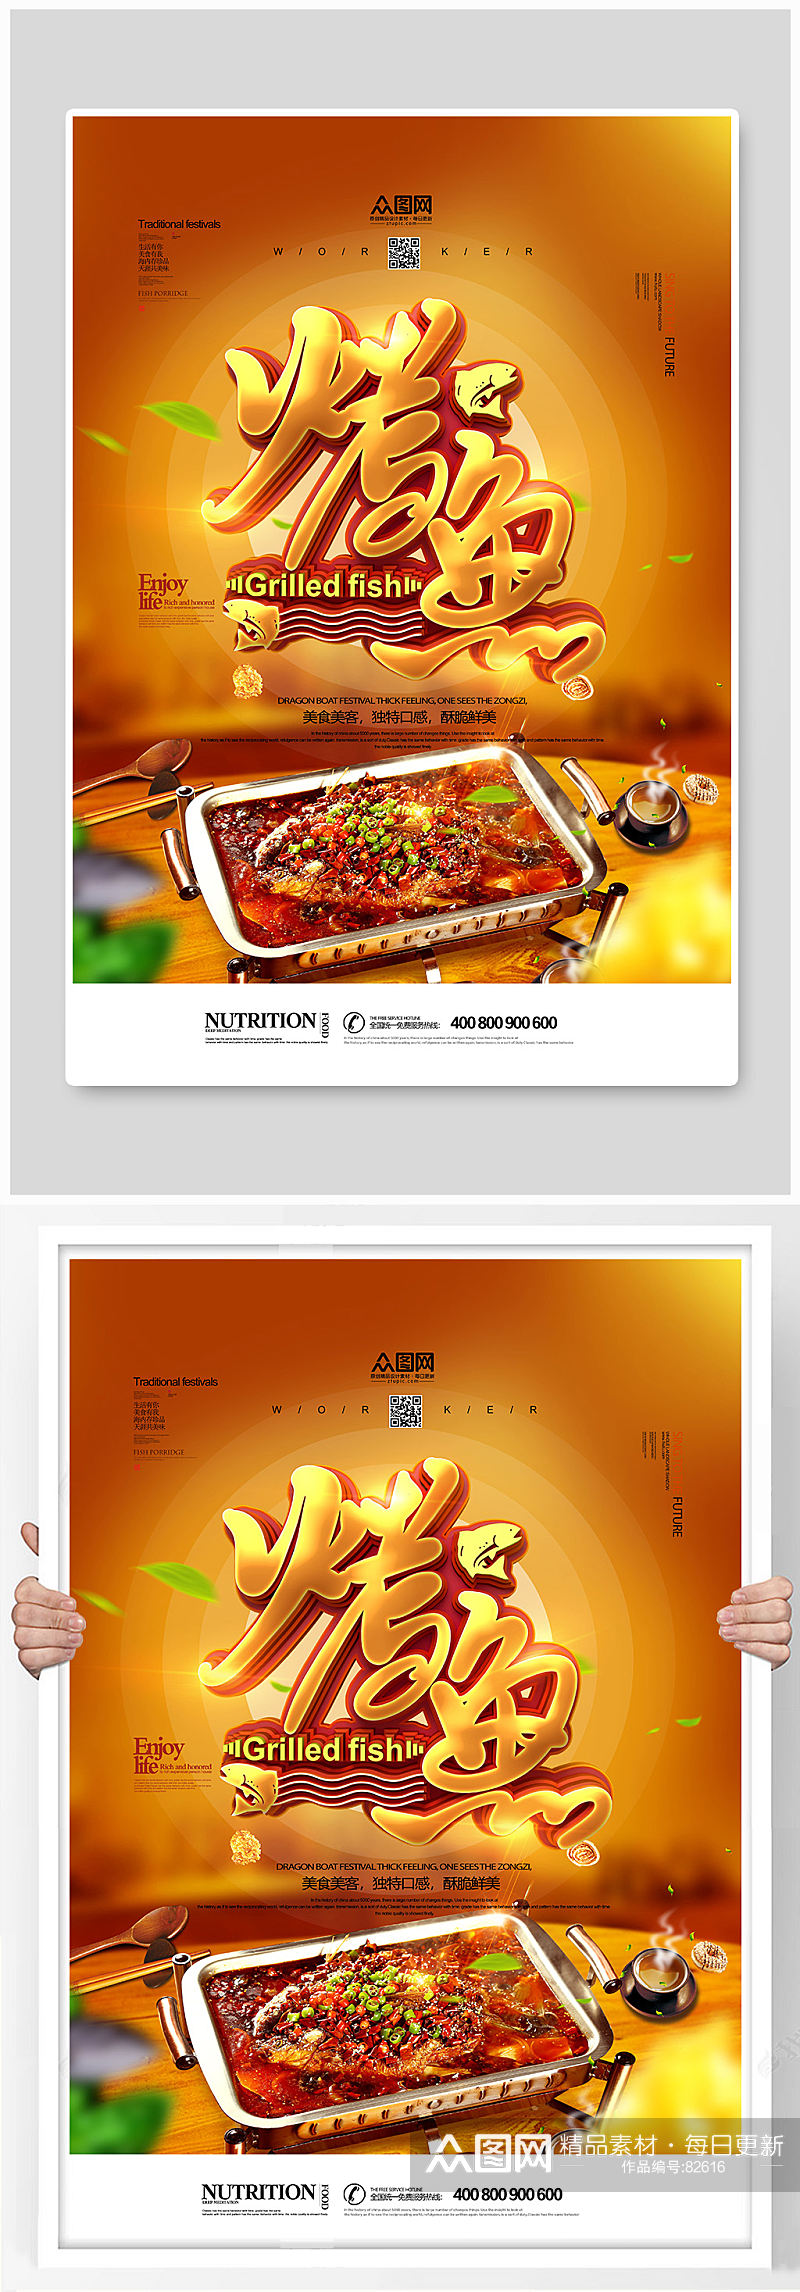 创意烧烤烤鱼宣传海报素材